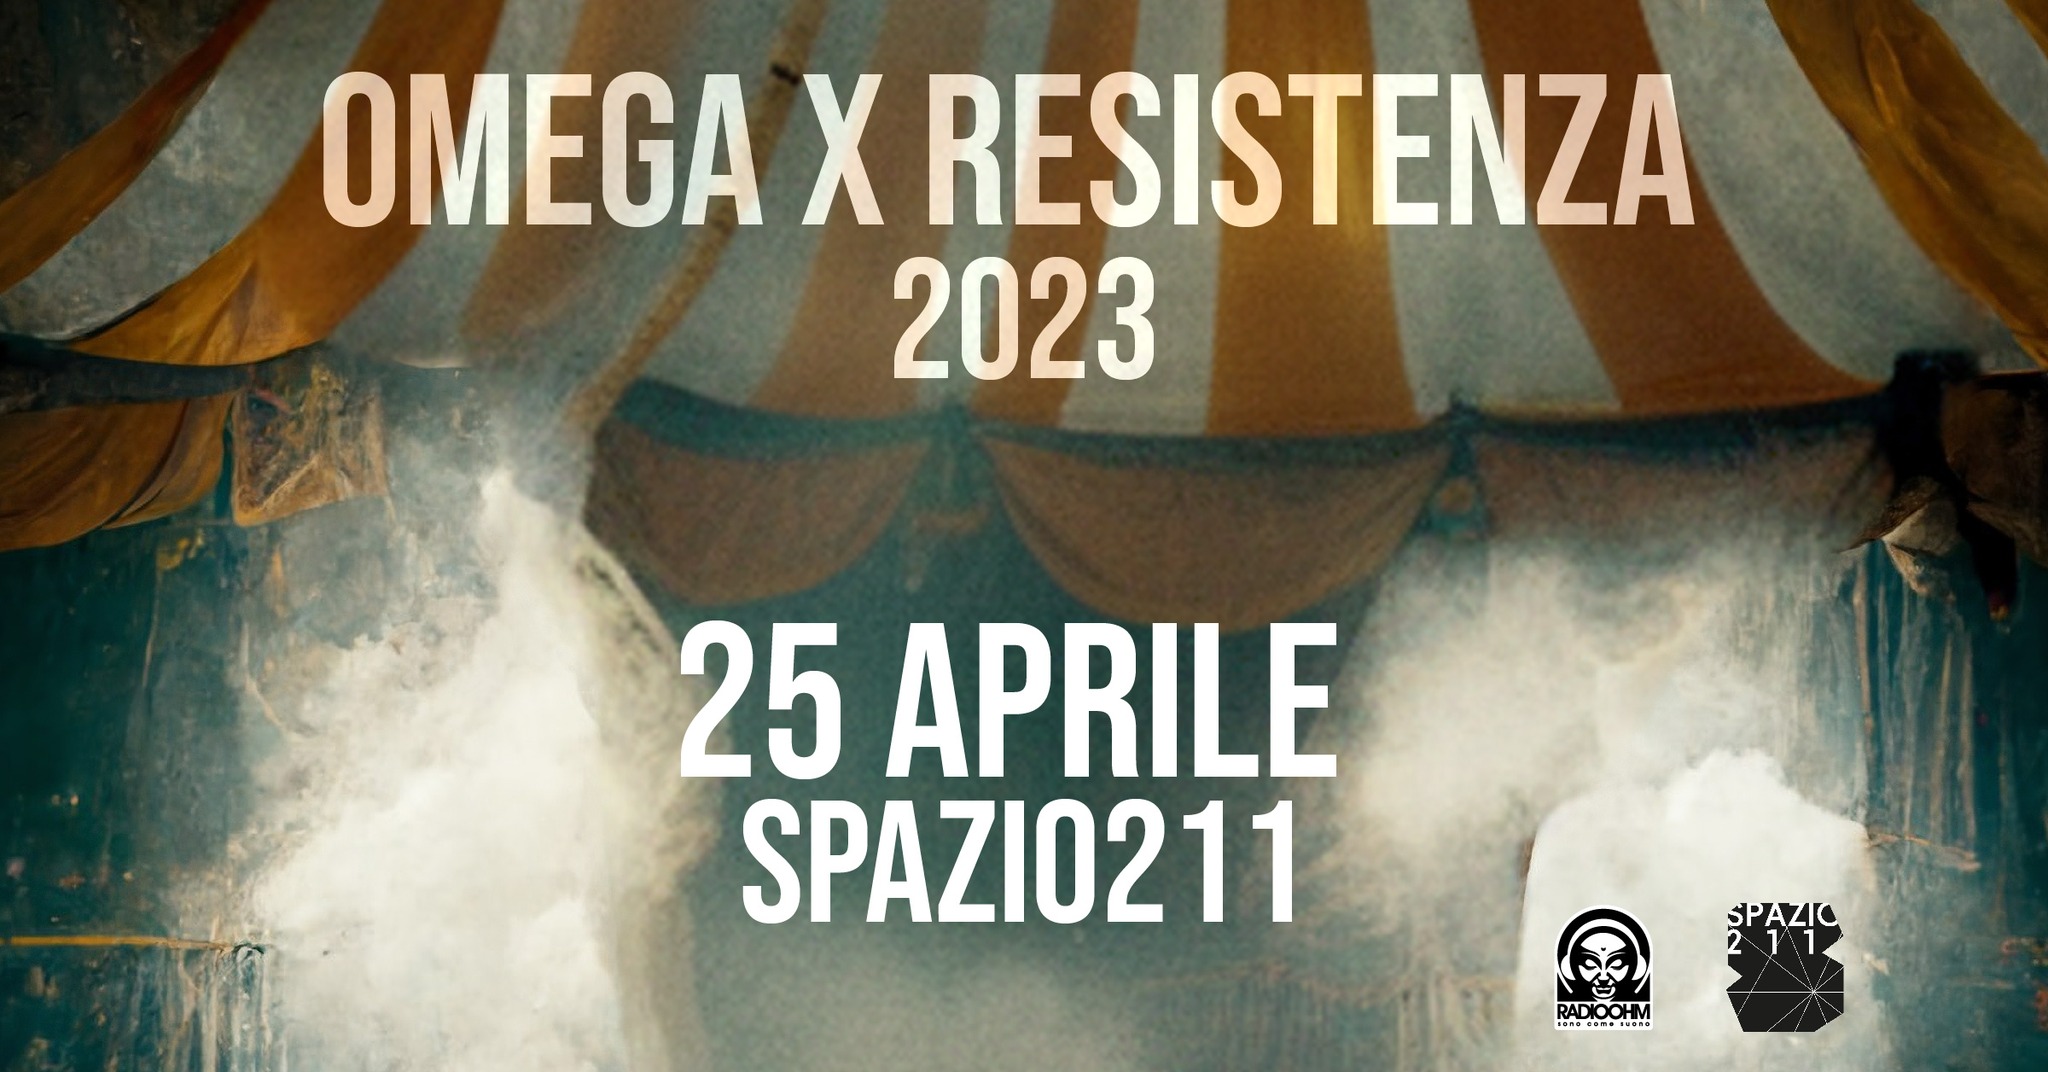 Omega X Resistenza 2023